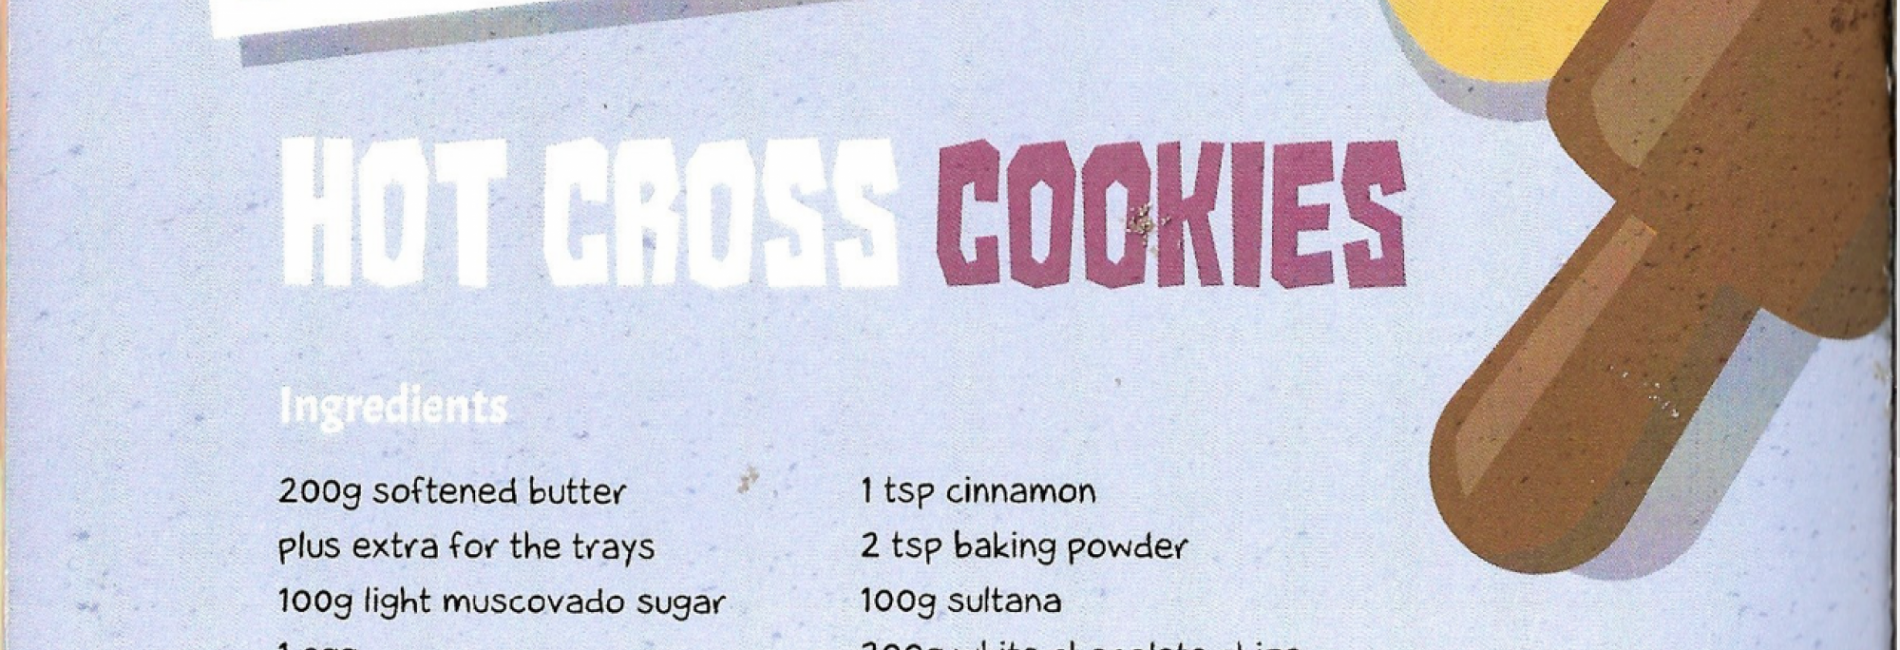 Wendy's Hot Cross Cookies!